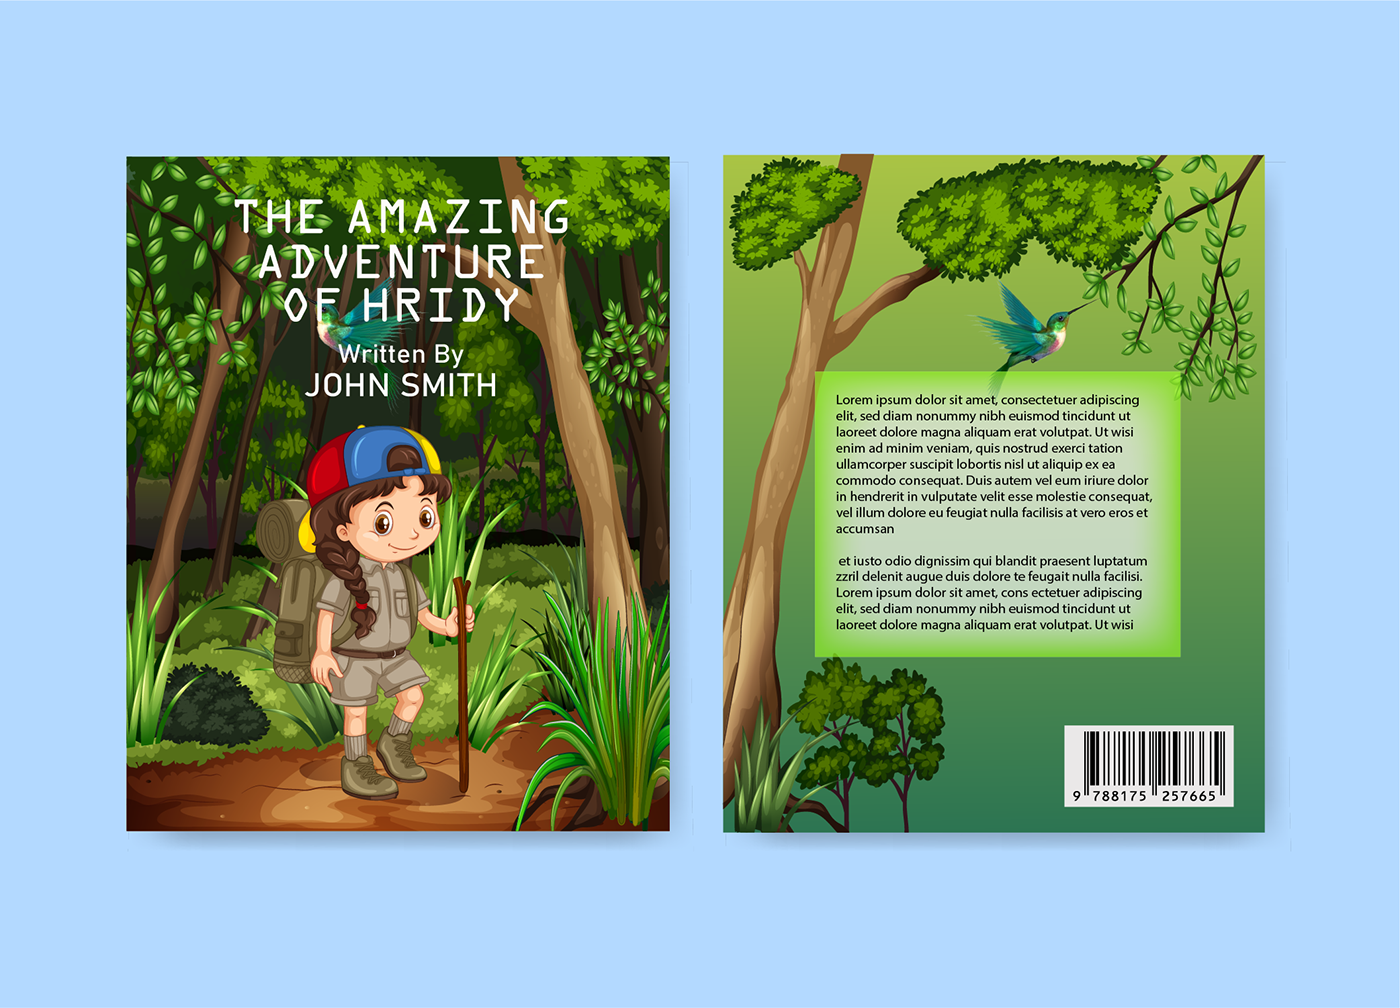 book cover cover book design books Book Cover Design adventure Nature graphic design  Digital Art  adobe illustrator